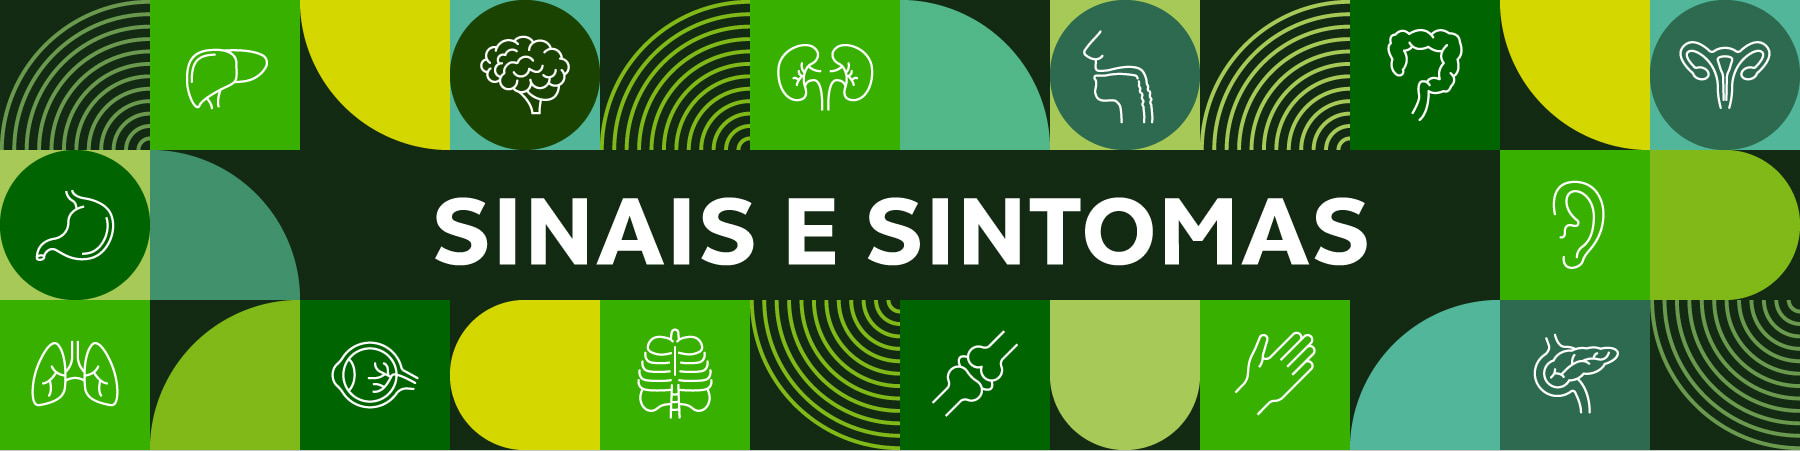 Mosaico de ícones com o texto "sinais e sintomas"